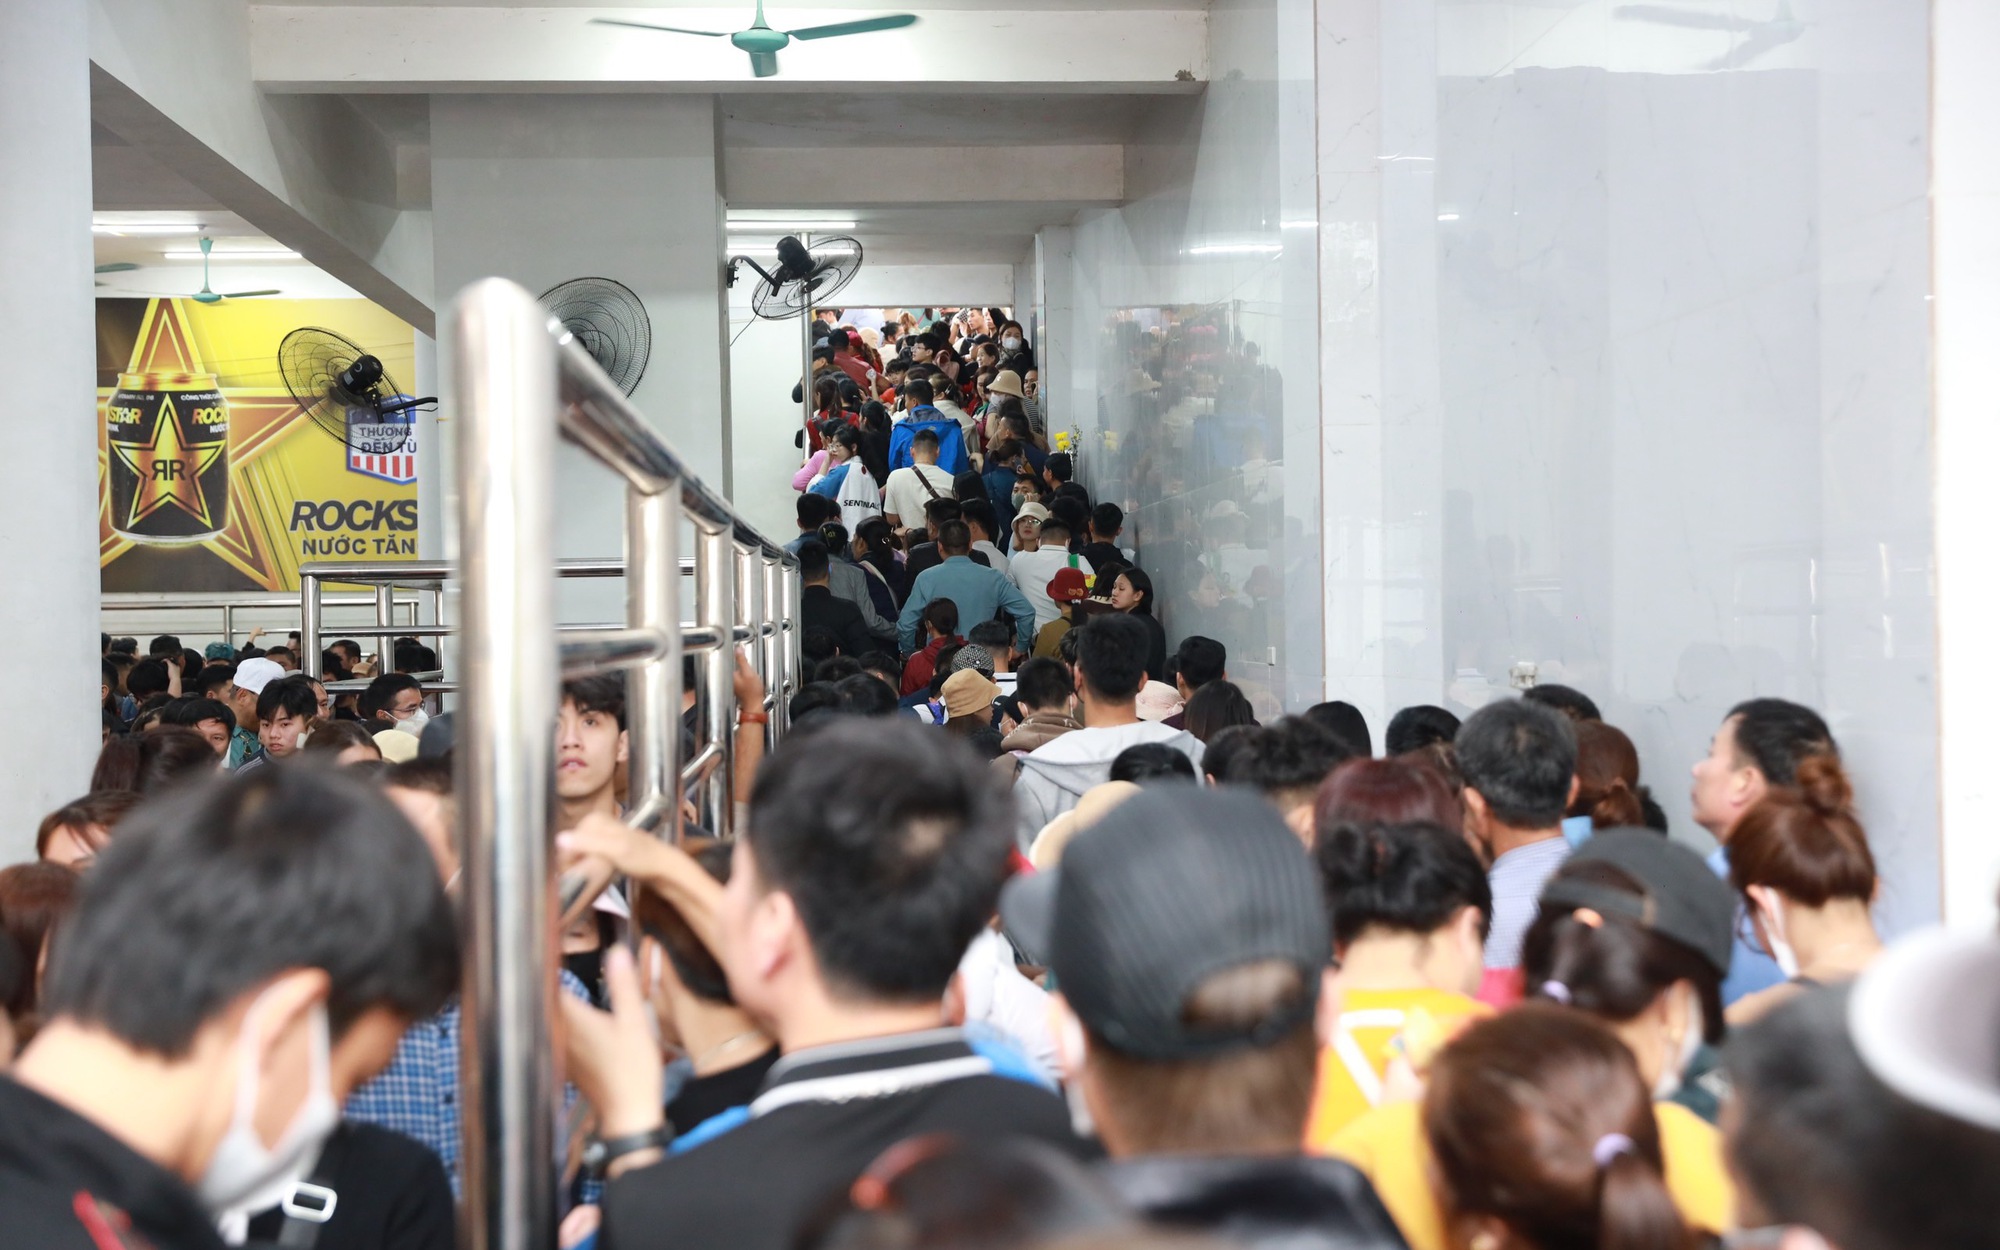 Tắc nghẹt lối lên cáp treo trước ngày khai hội chùa Hương, nhiều du khách mua vé 